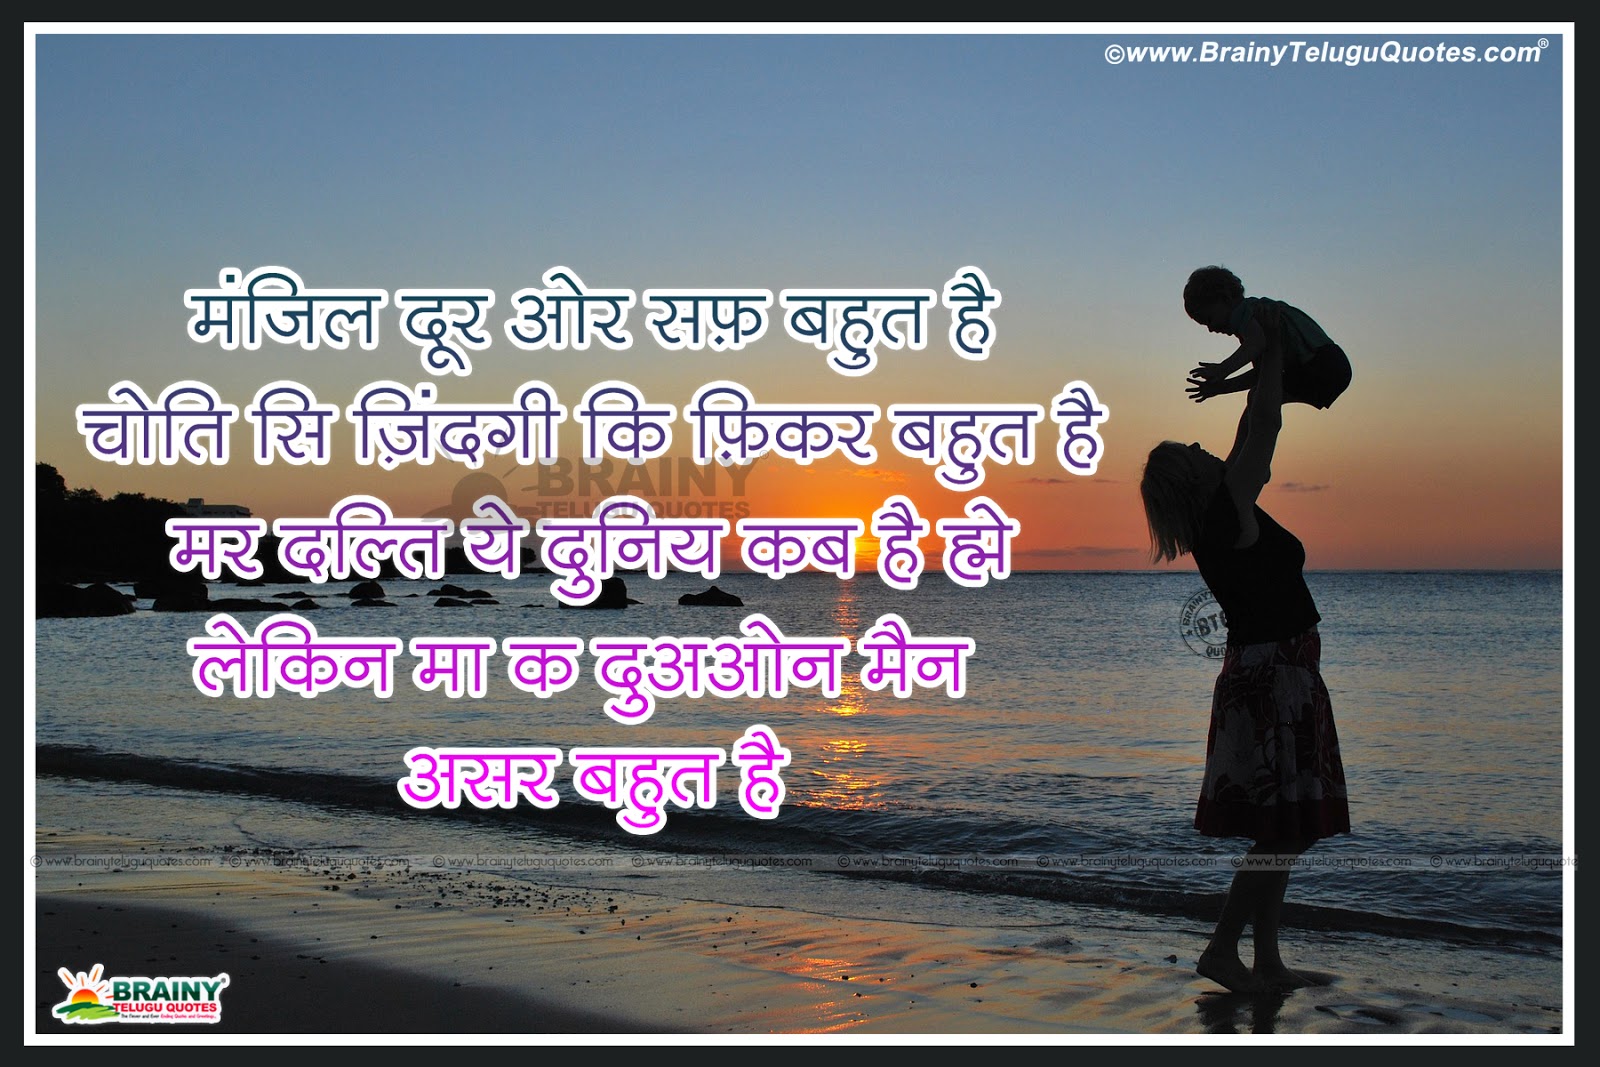 Whats App Sharing Mother Quotes in Hindi Hindi Famous Mother Shayari mother quotes in